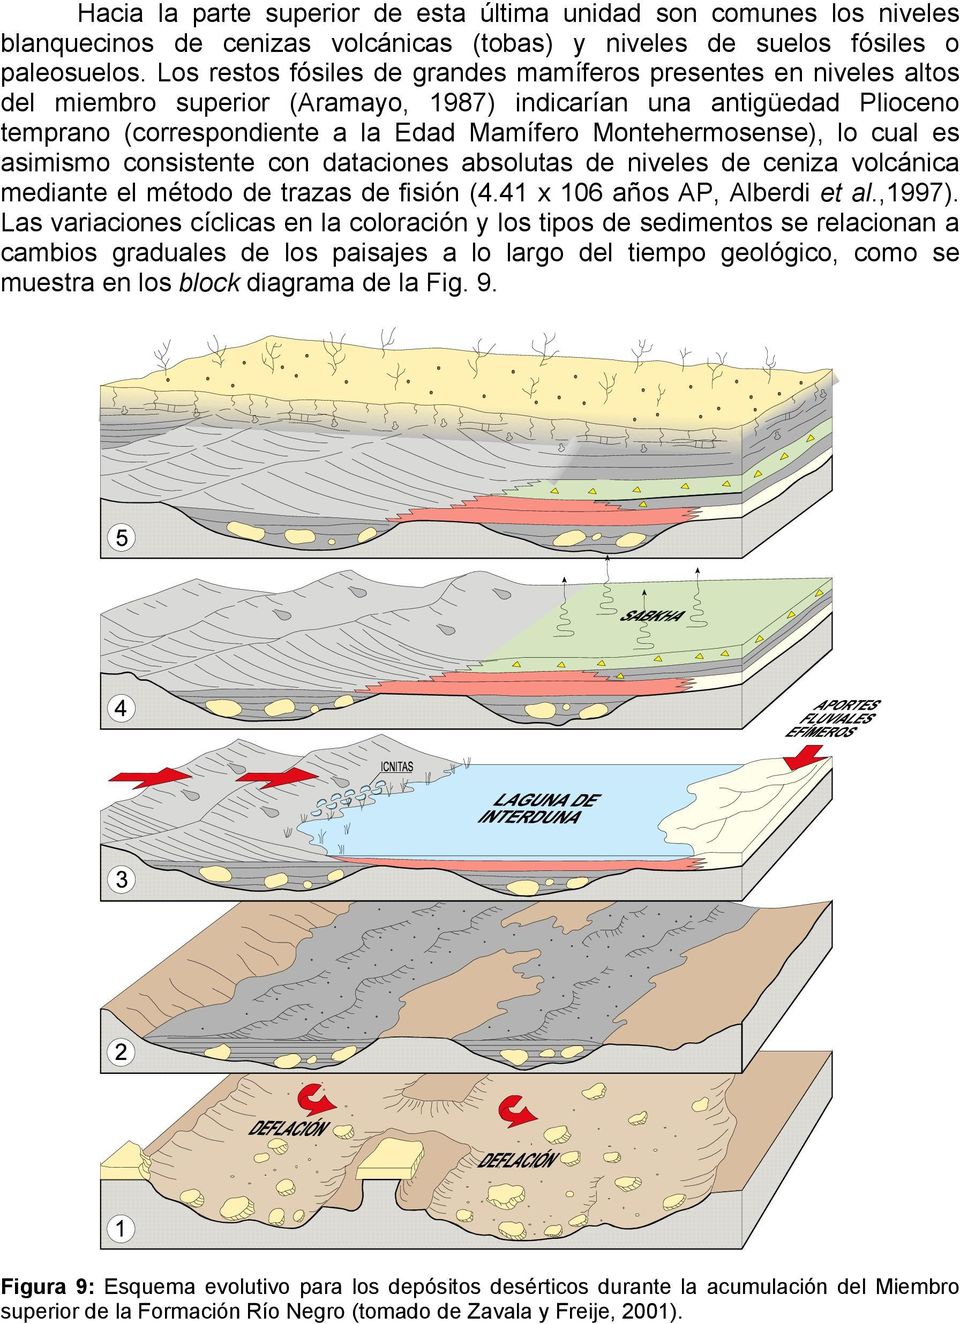 Montehermosense), lo cual es asimismo consistente con dataciones absolutas de niveles de ceniza volcánica mediante el método de trazas de fisión (4.41 x 106 años AP, Alberdi et al.,1997).